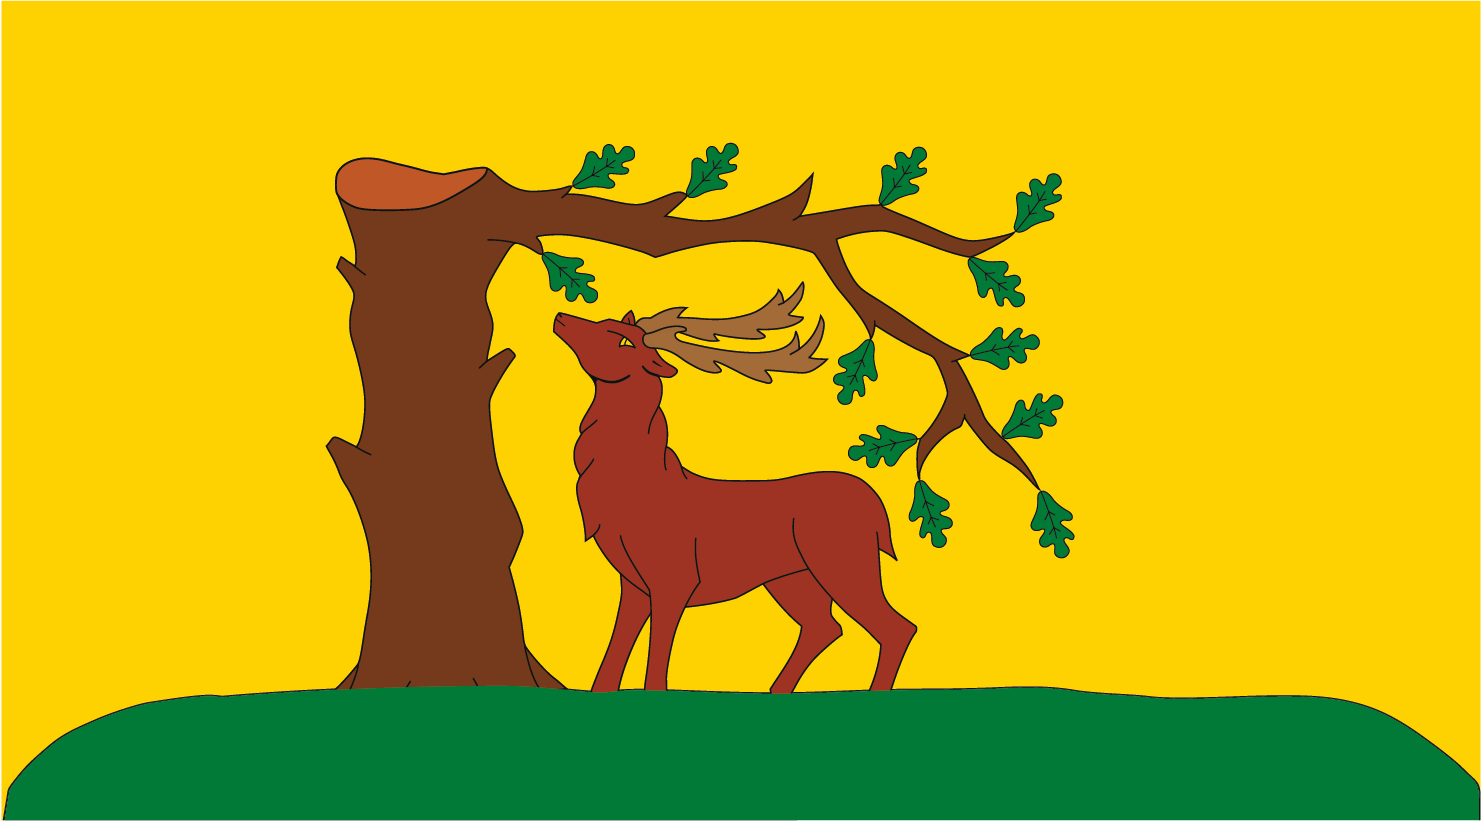 Buckinghamshire County Flag of England 5' x 3' 